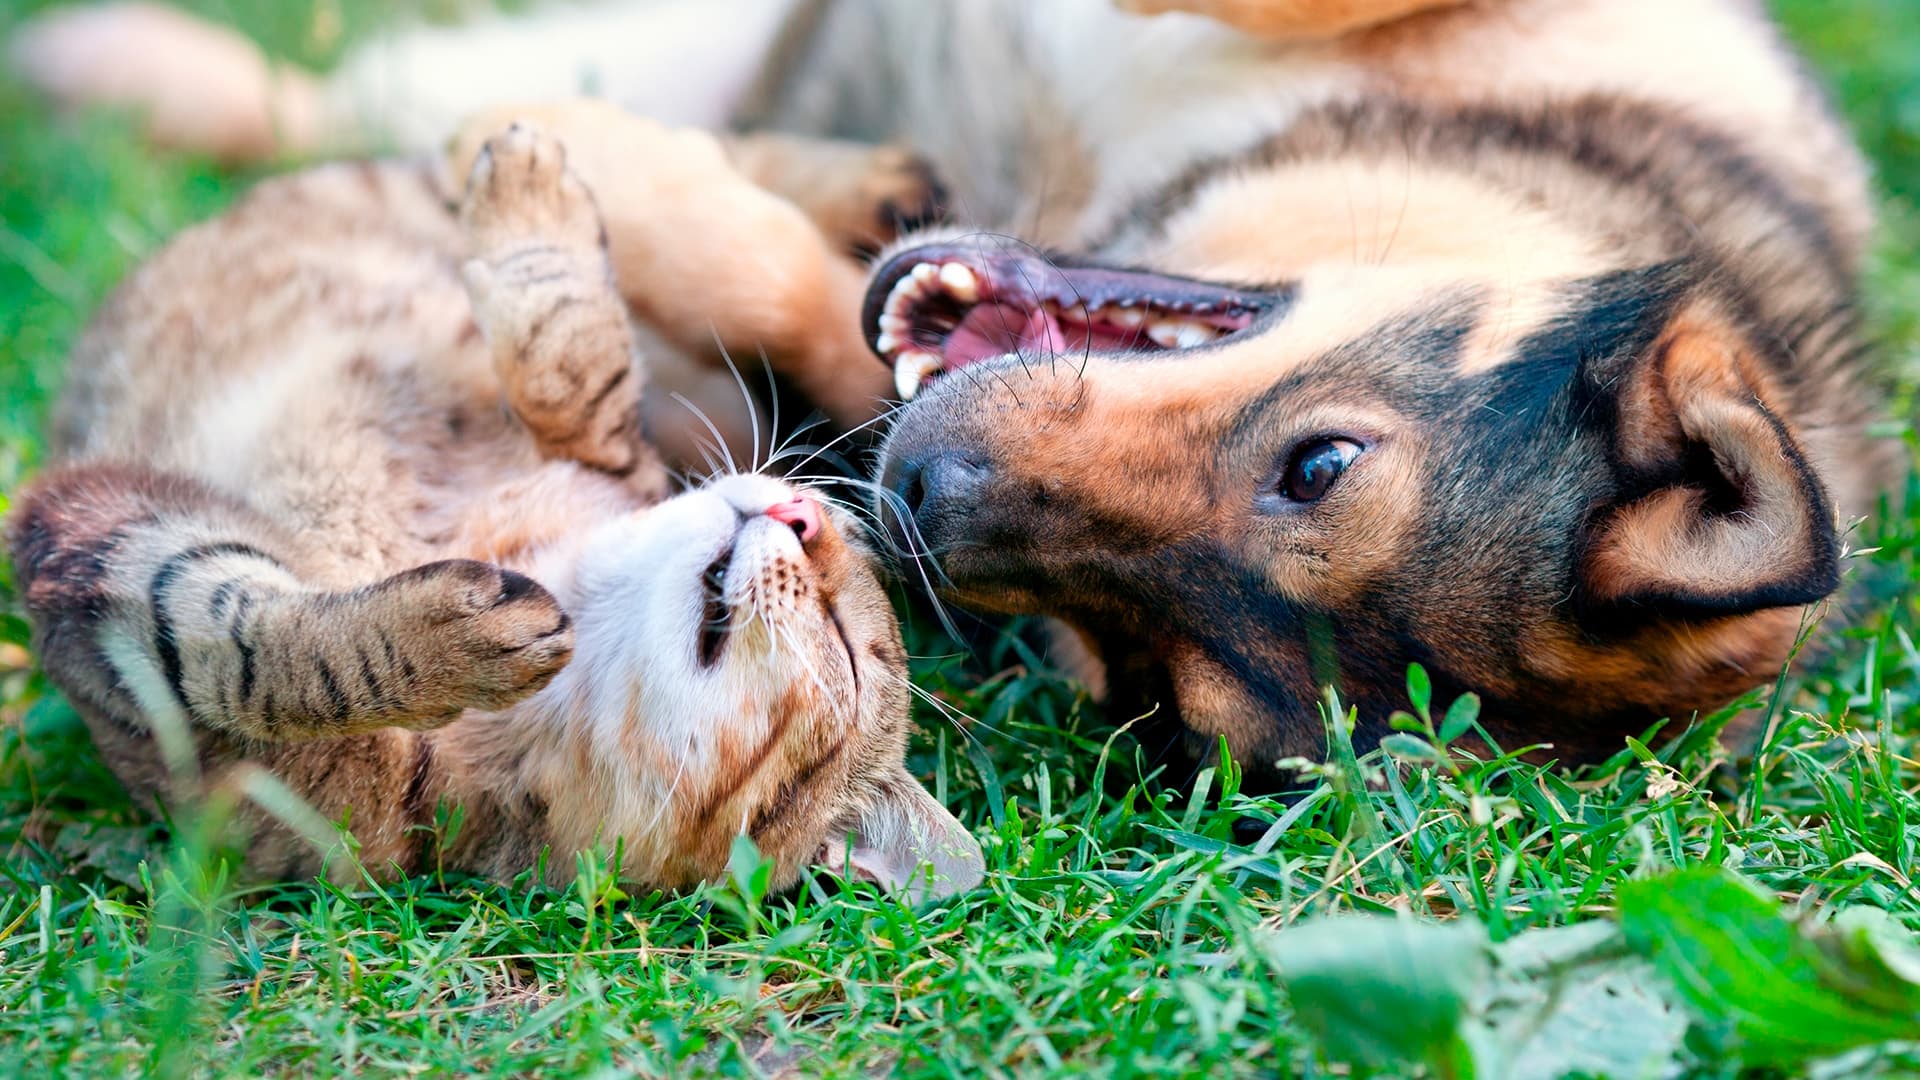 Kissa ja koira telmivät nurmikolla